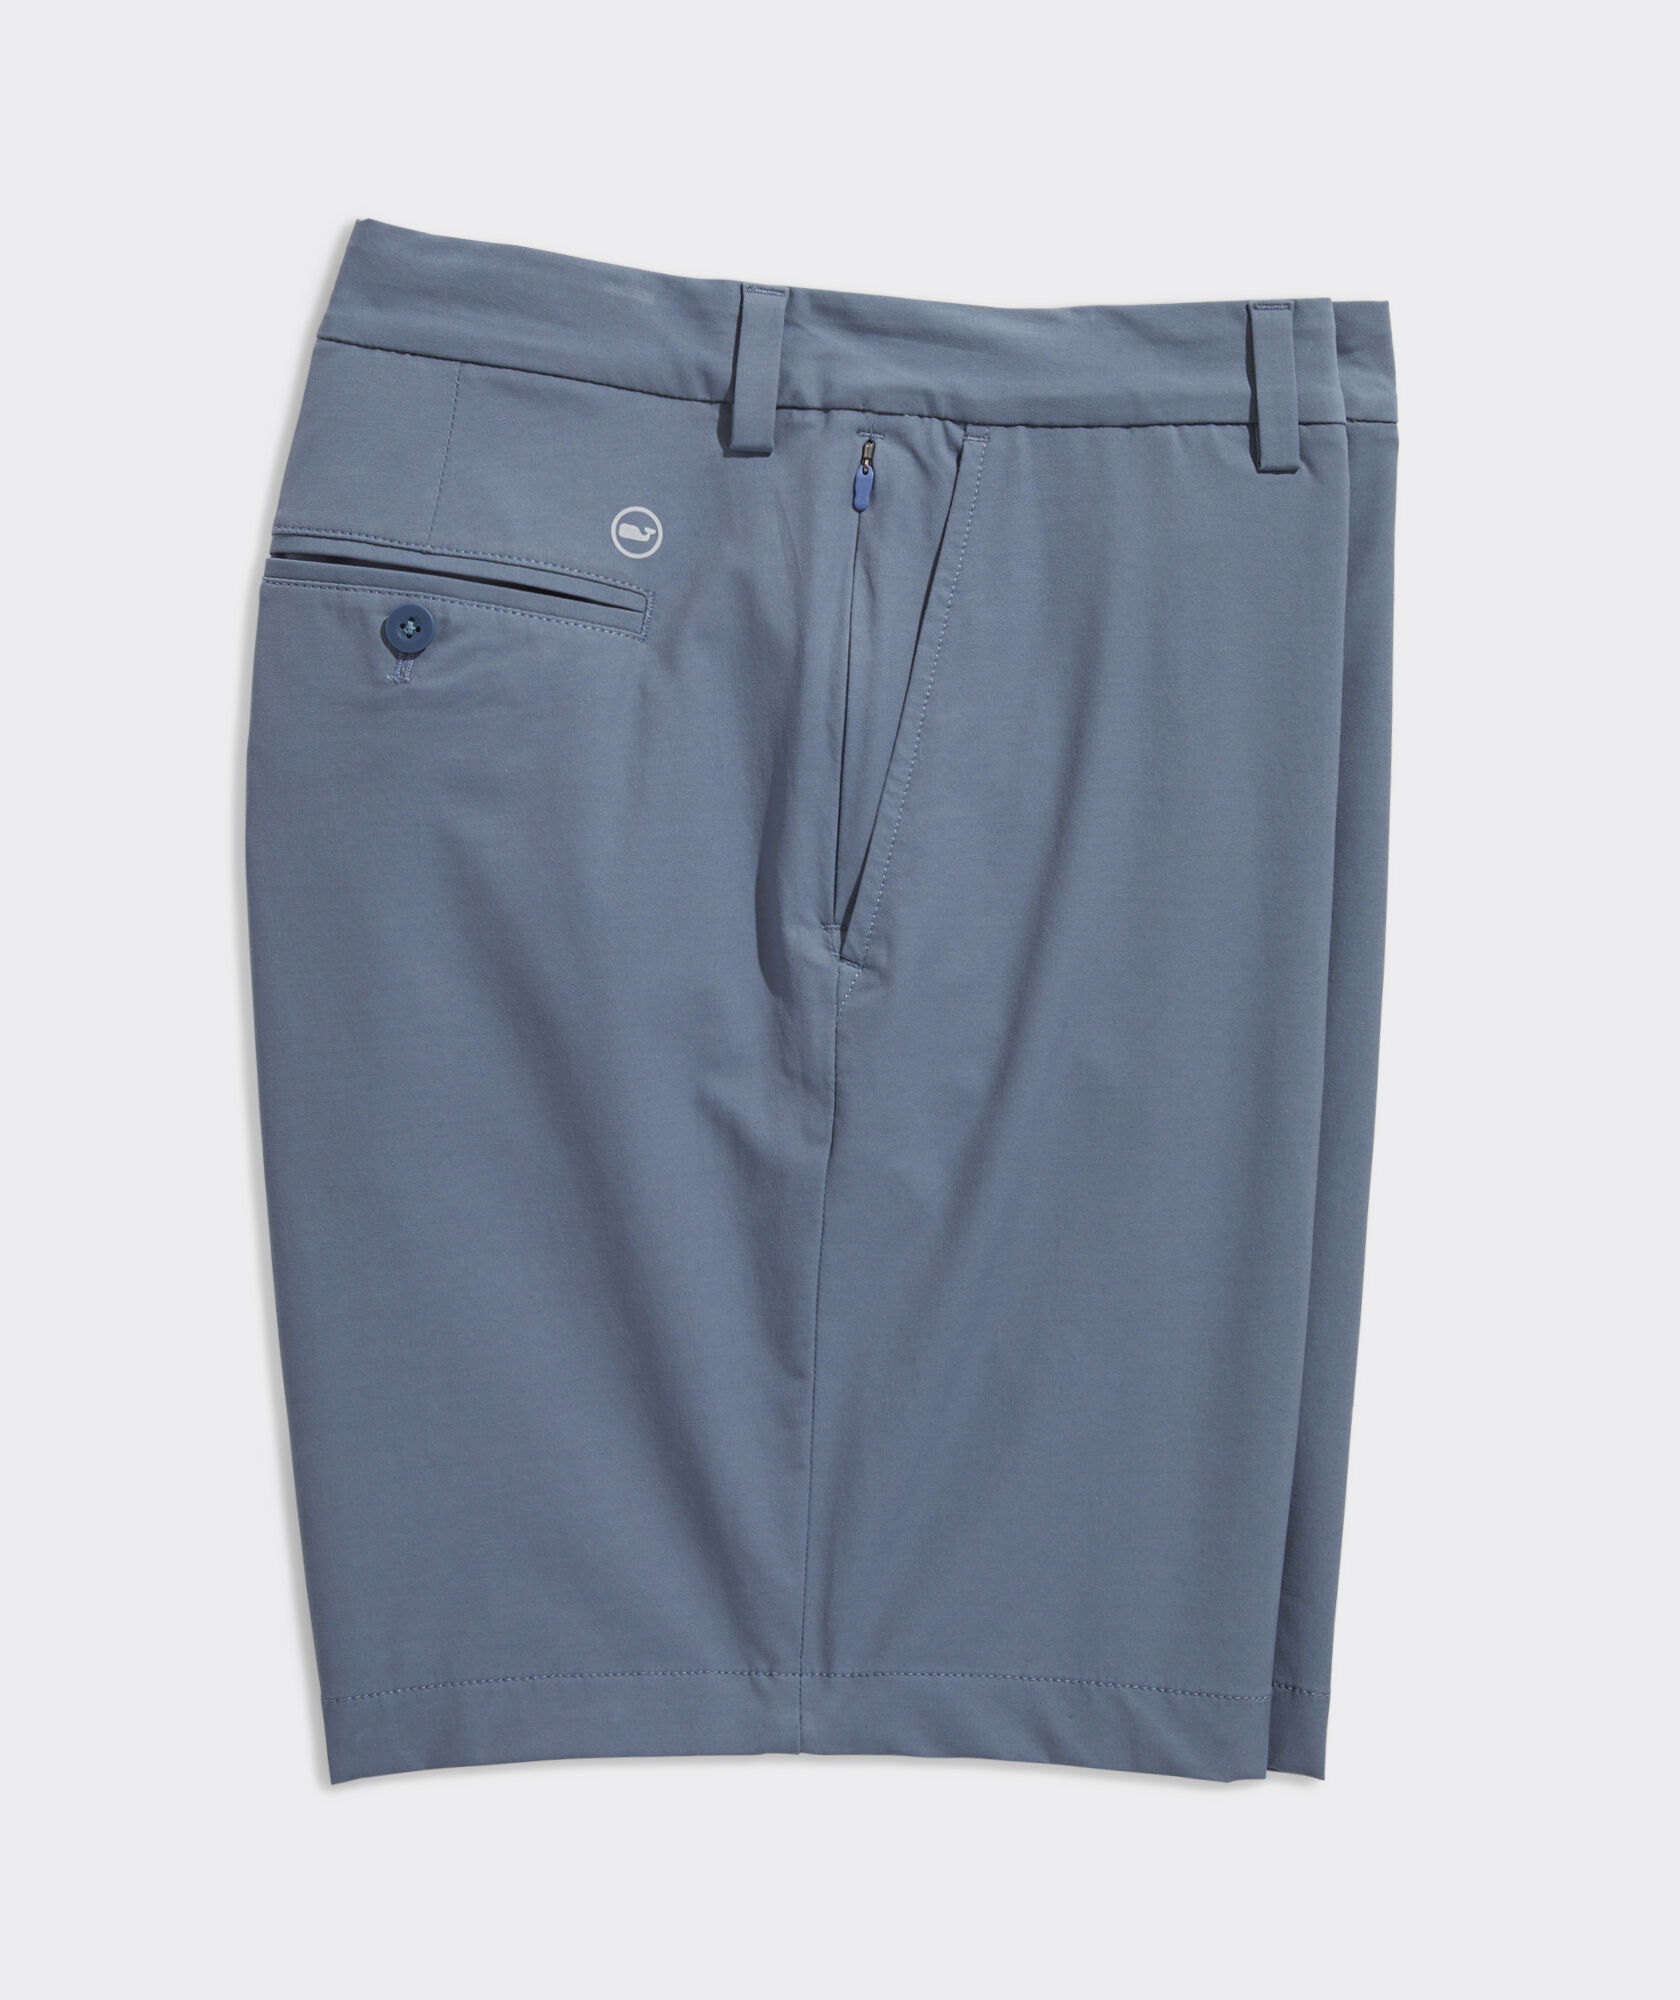 8 Inch Stillwater Golf Shorts